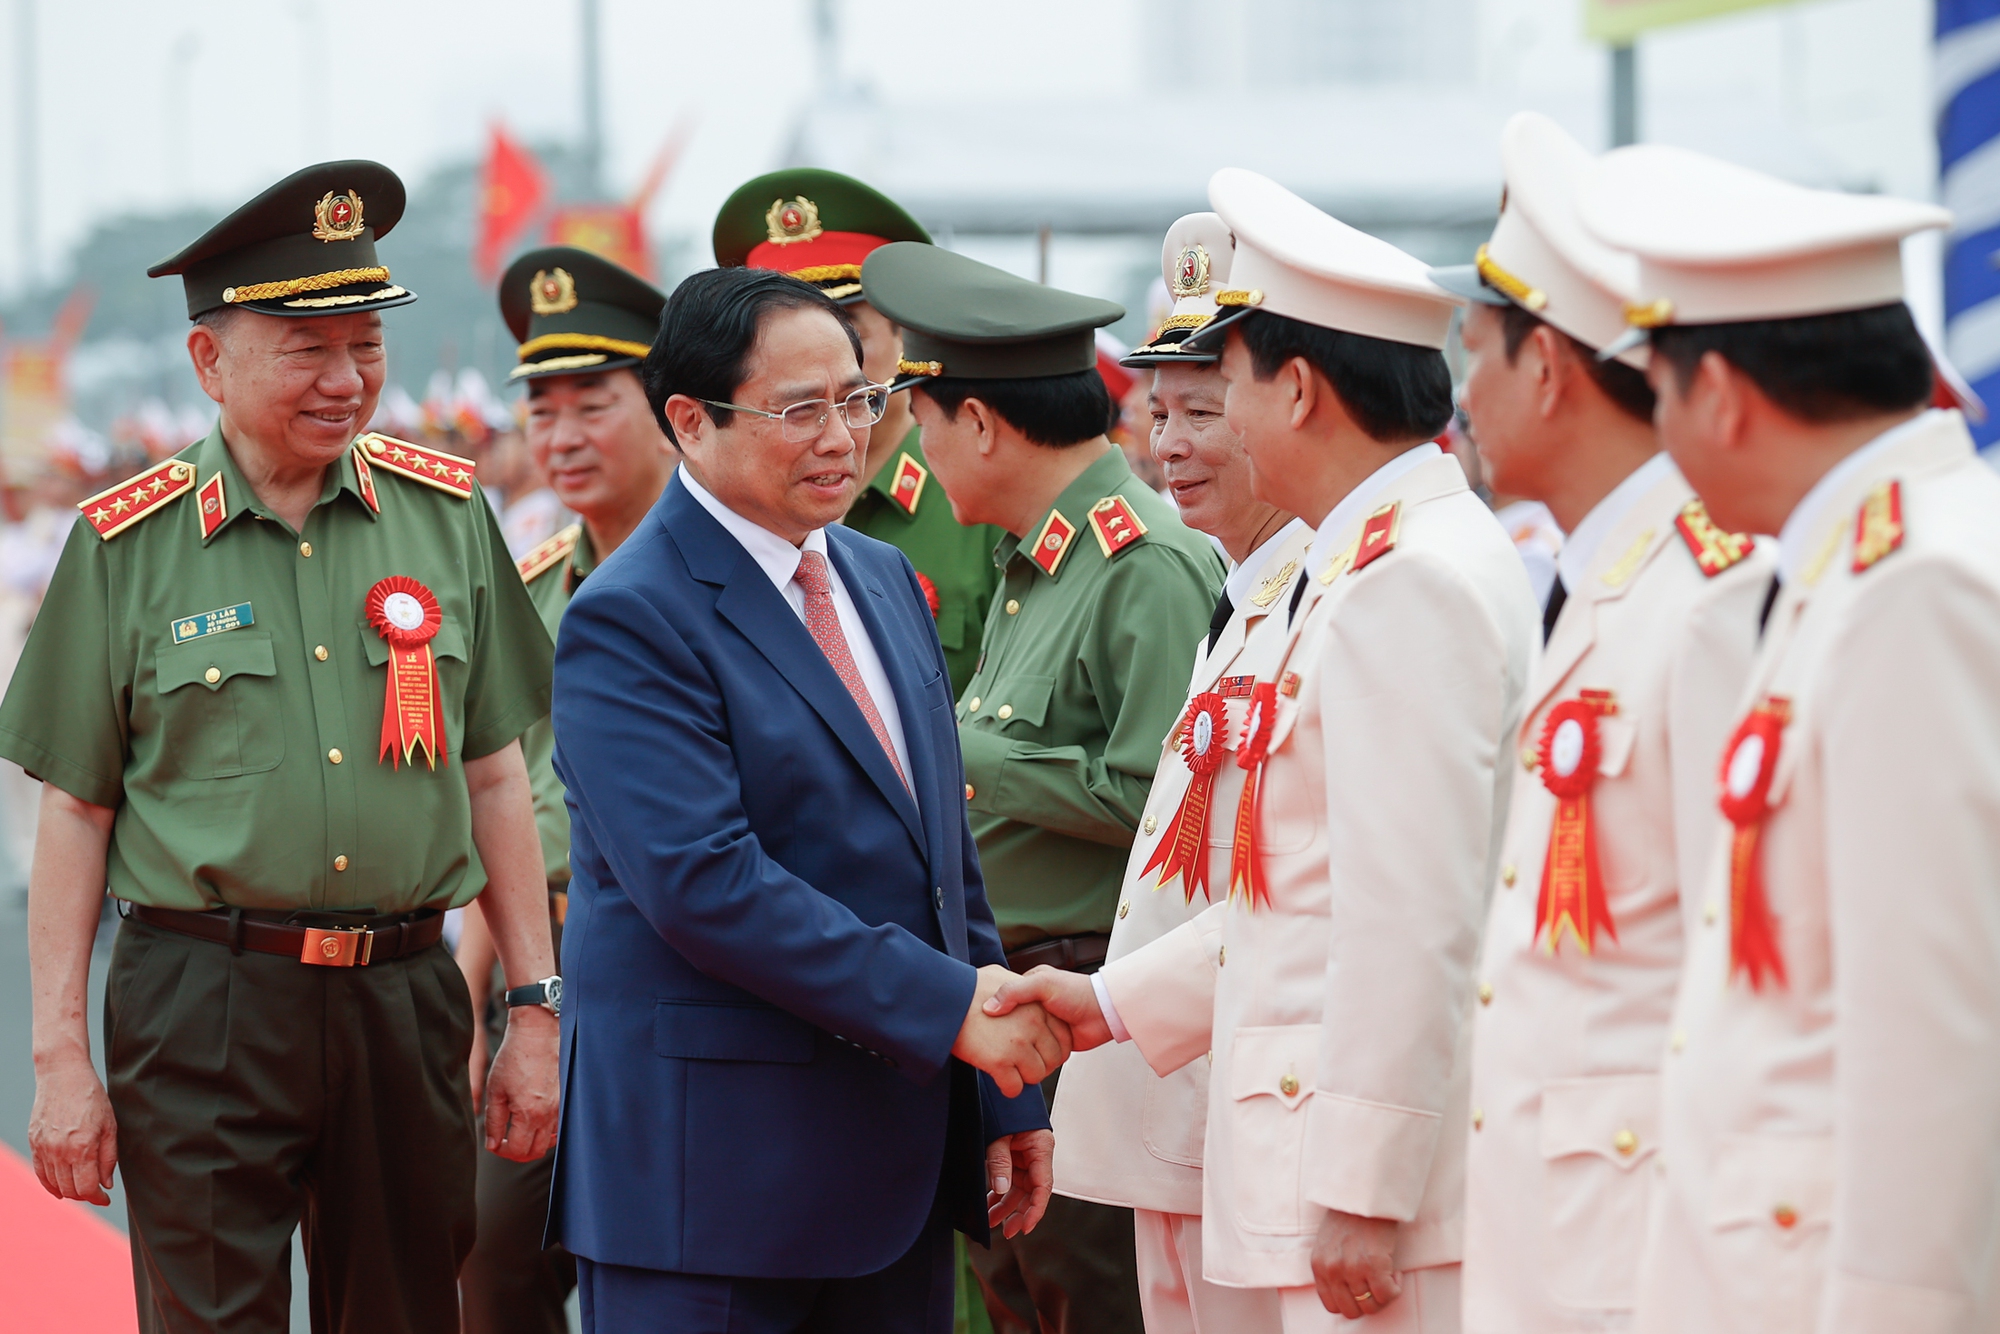 Thủ tướng Phạm Minh Chính và Bộ trưởng Bộ Công an Tô Lâm cùng lãnh đạo Bộ Công an tham dự Lễ kỷ niệm - Ảnh: VGP/Nhật Bắc